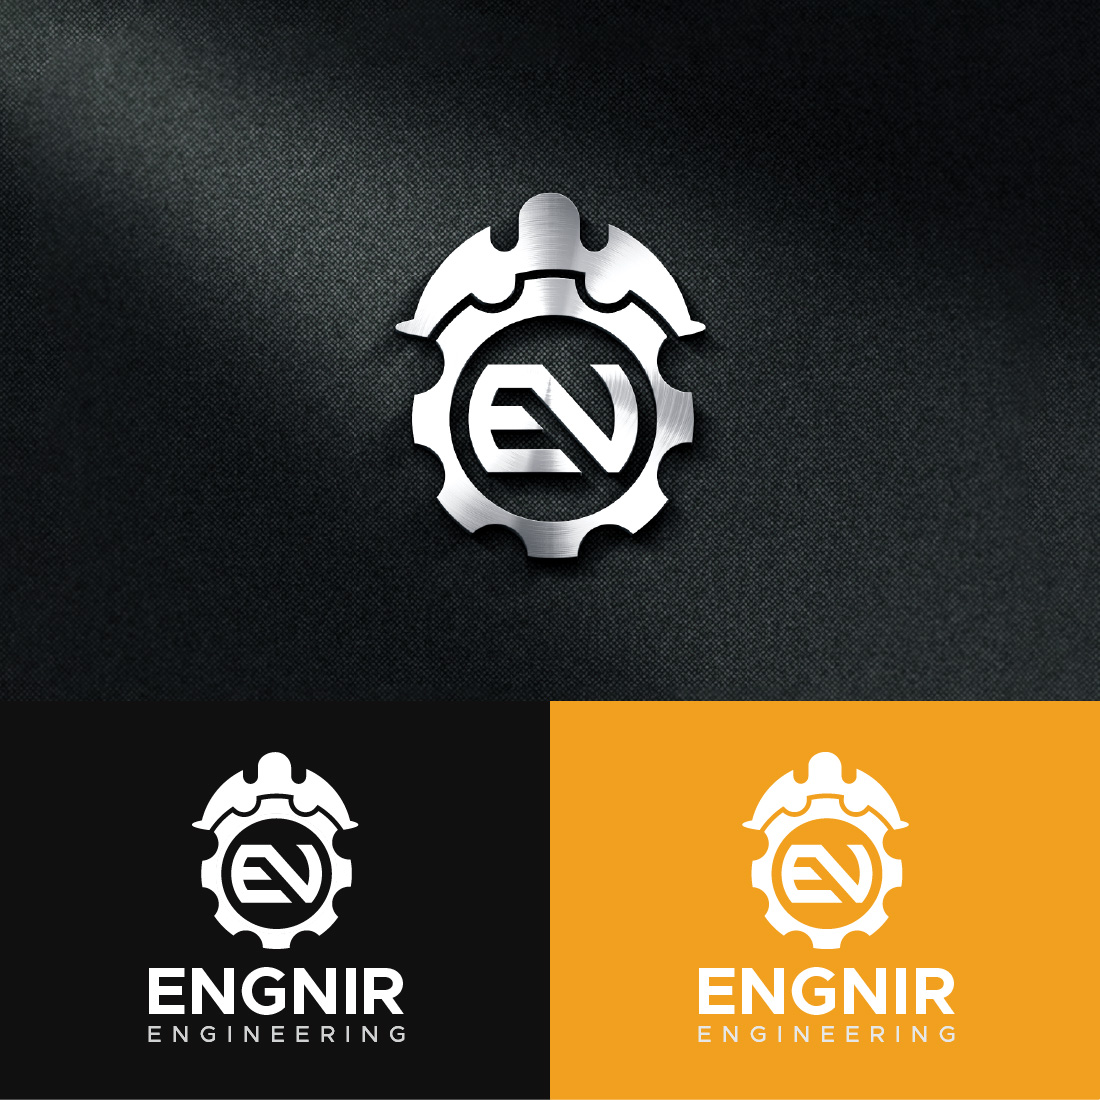 Engineering Letter EN Logo Design Template cover image.